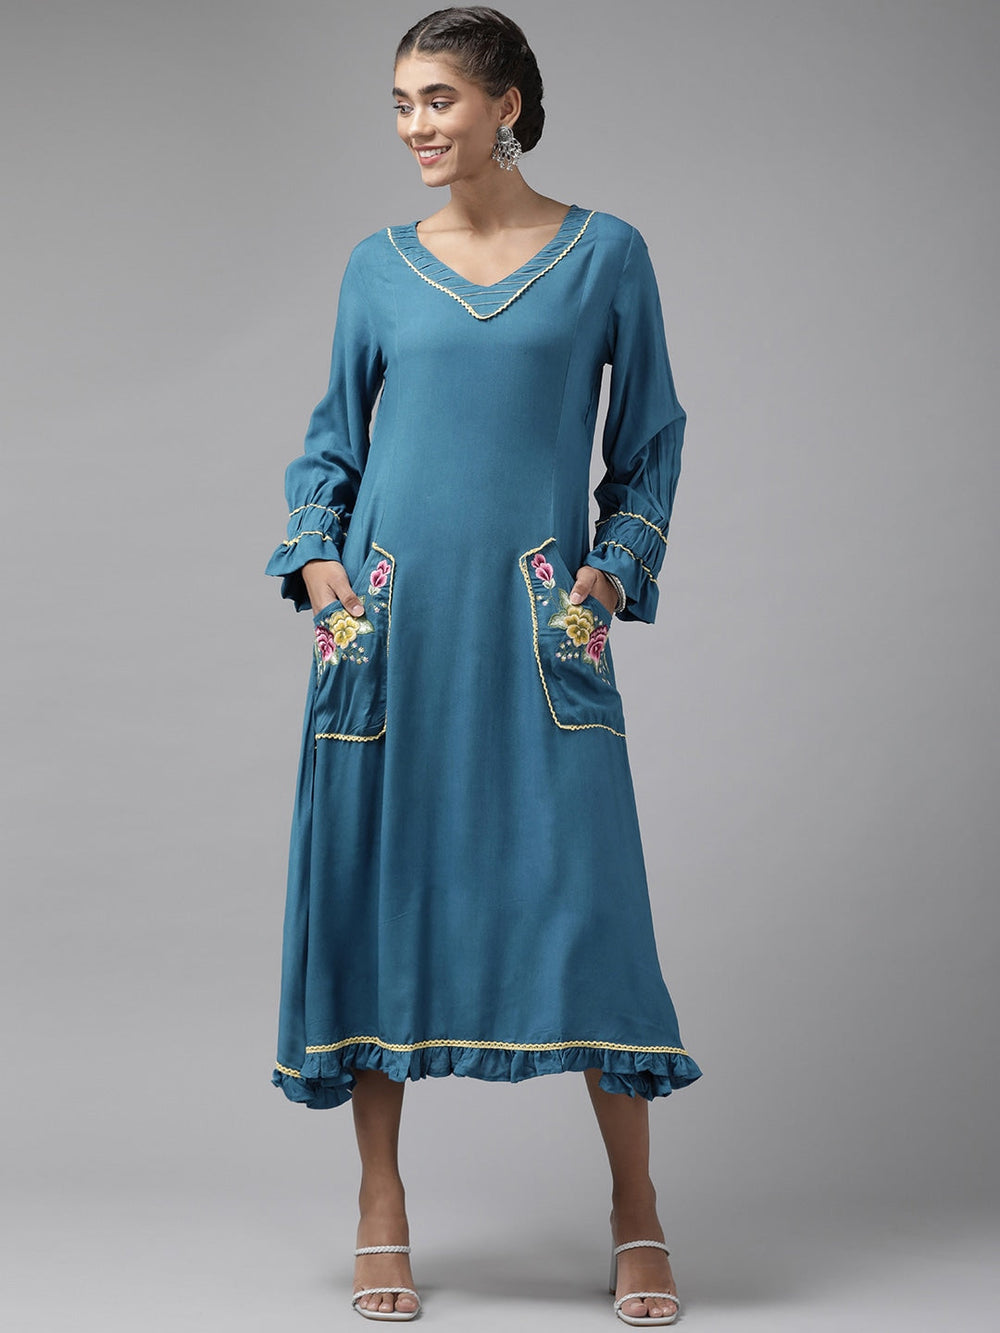 Teal Blue Ethnic Midi Dress-Yufta Store-9657DRSBLS